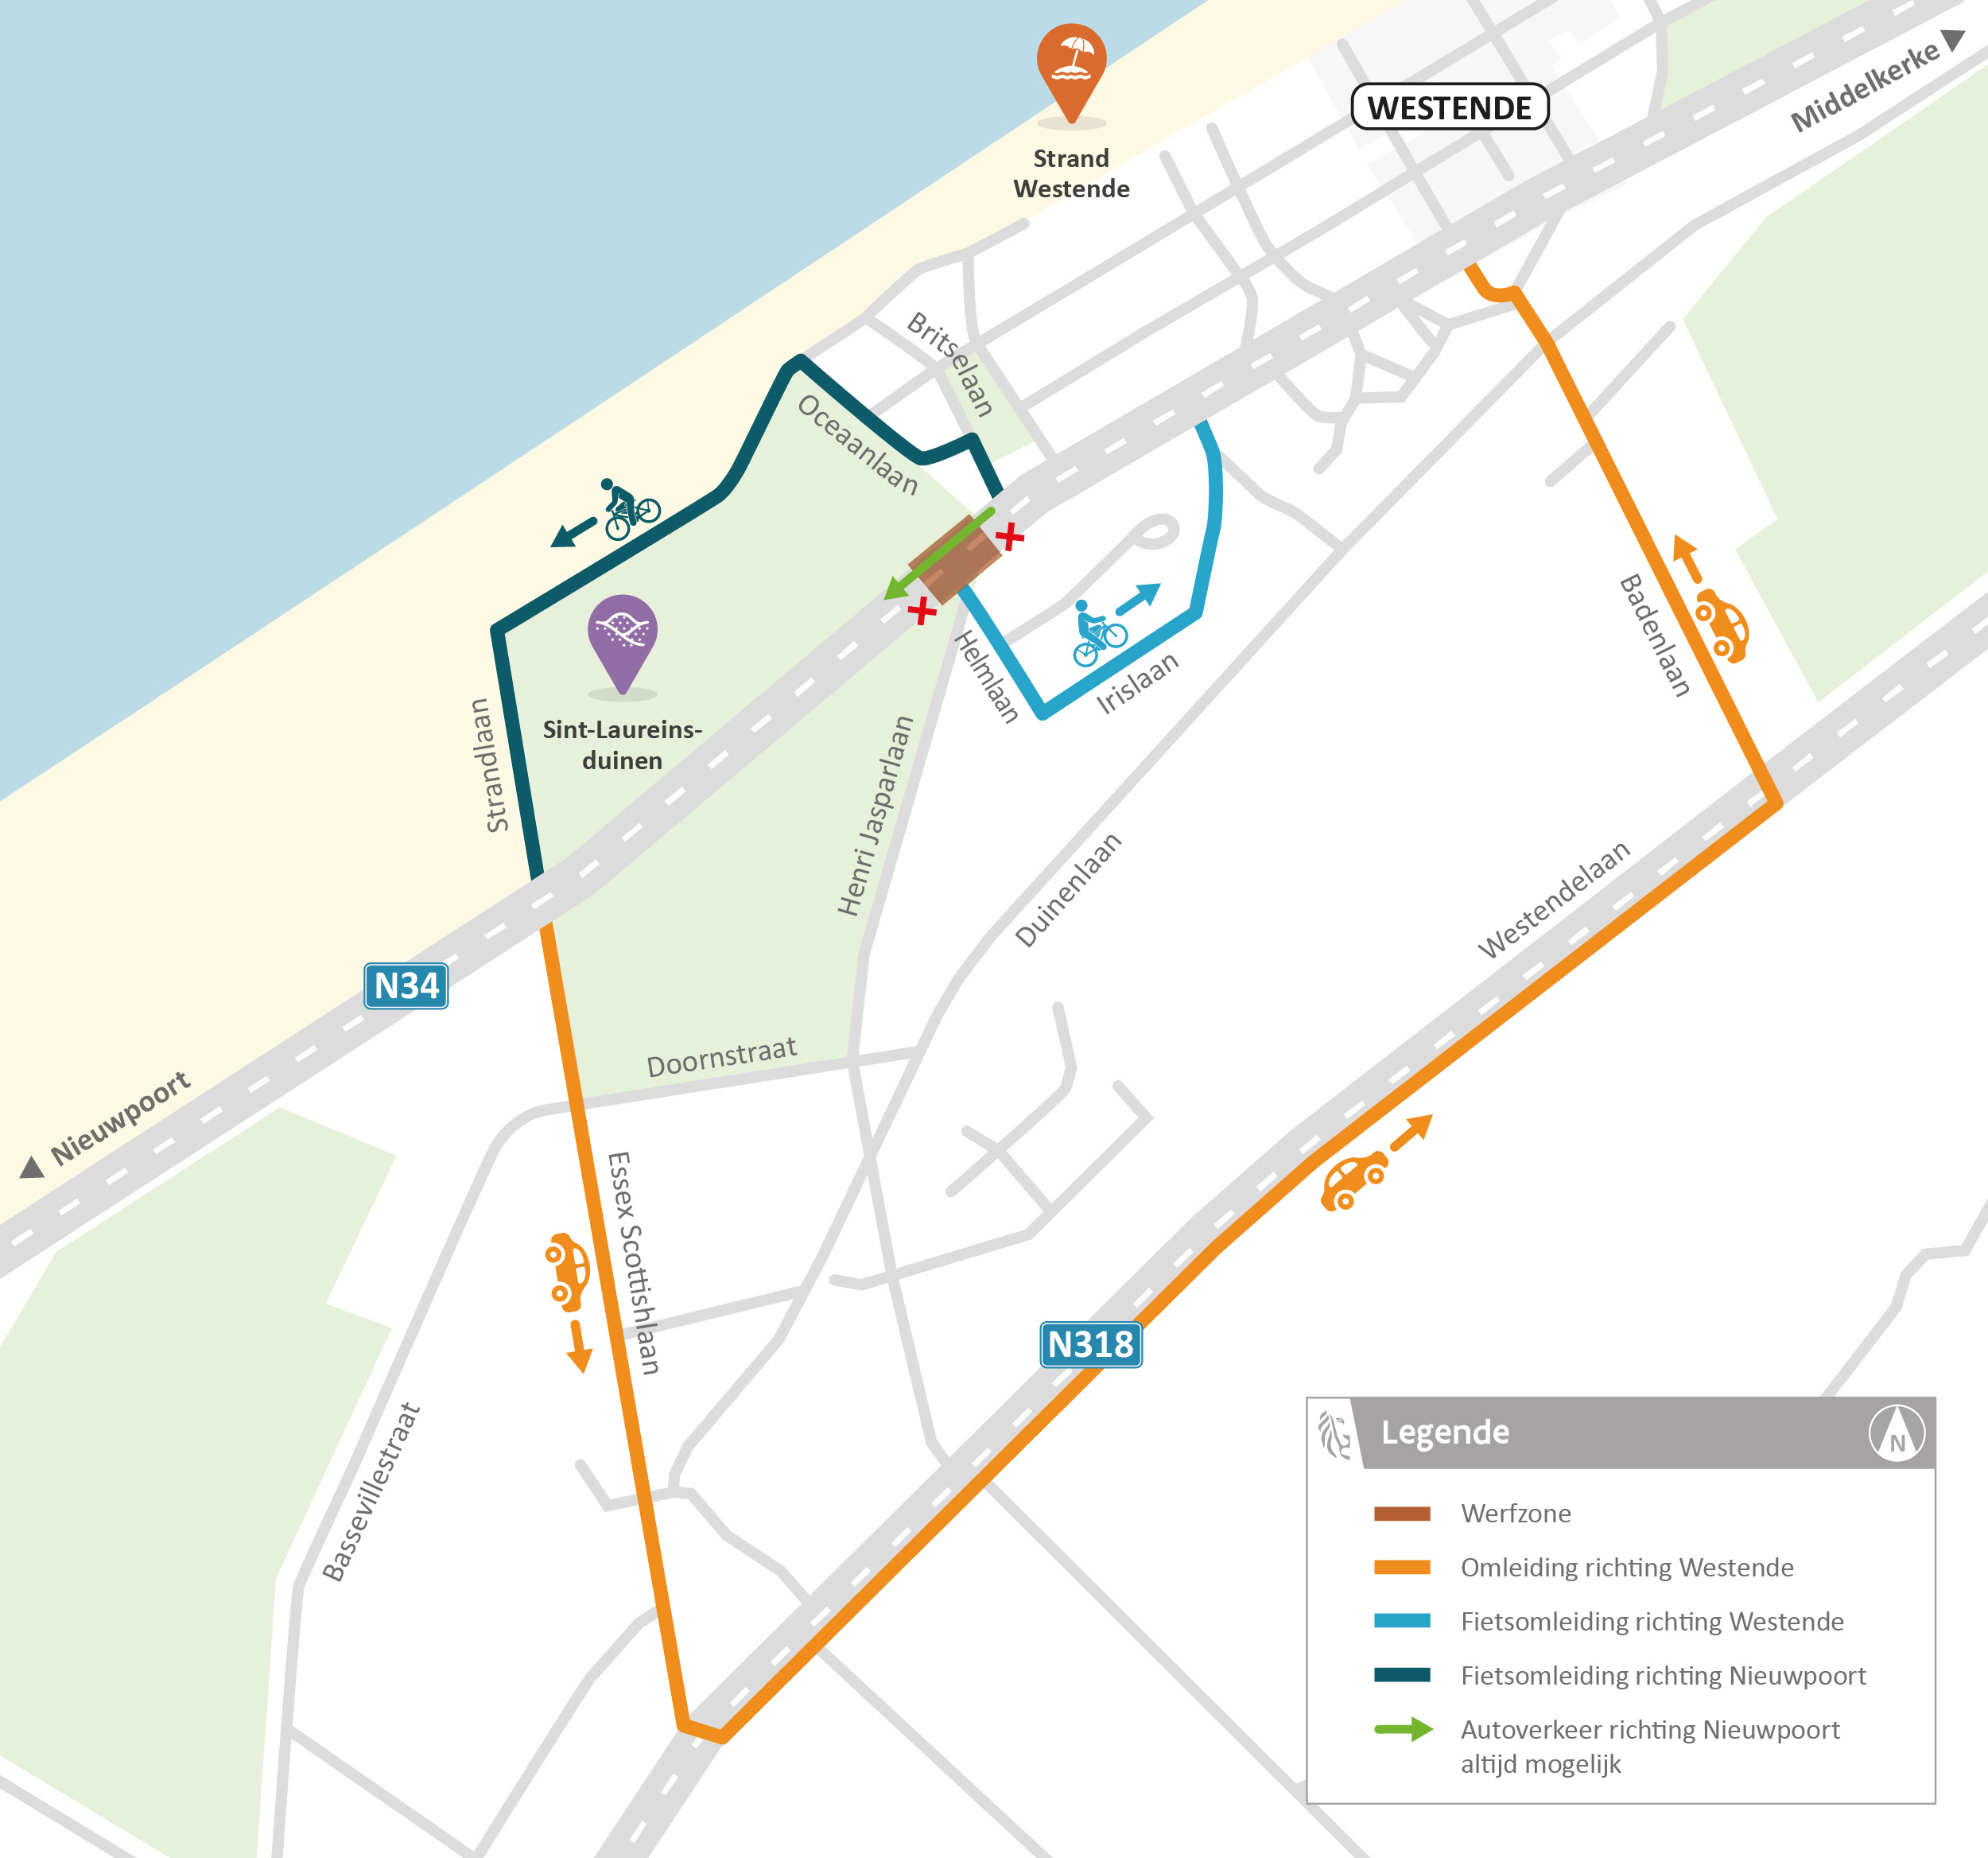 Kruispunt N34 - Henri Jasparlaan in Middelkerke wordt veiliger voor fietsers en voetgangers